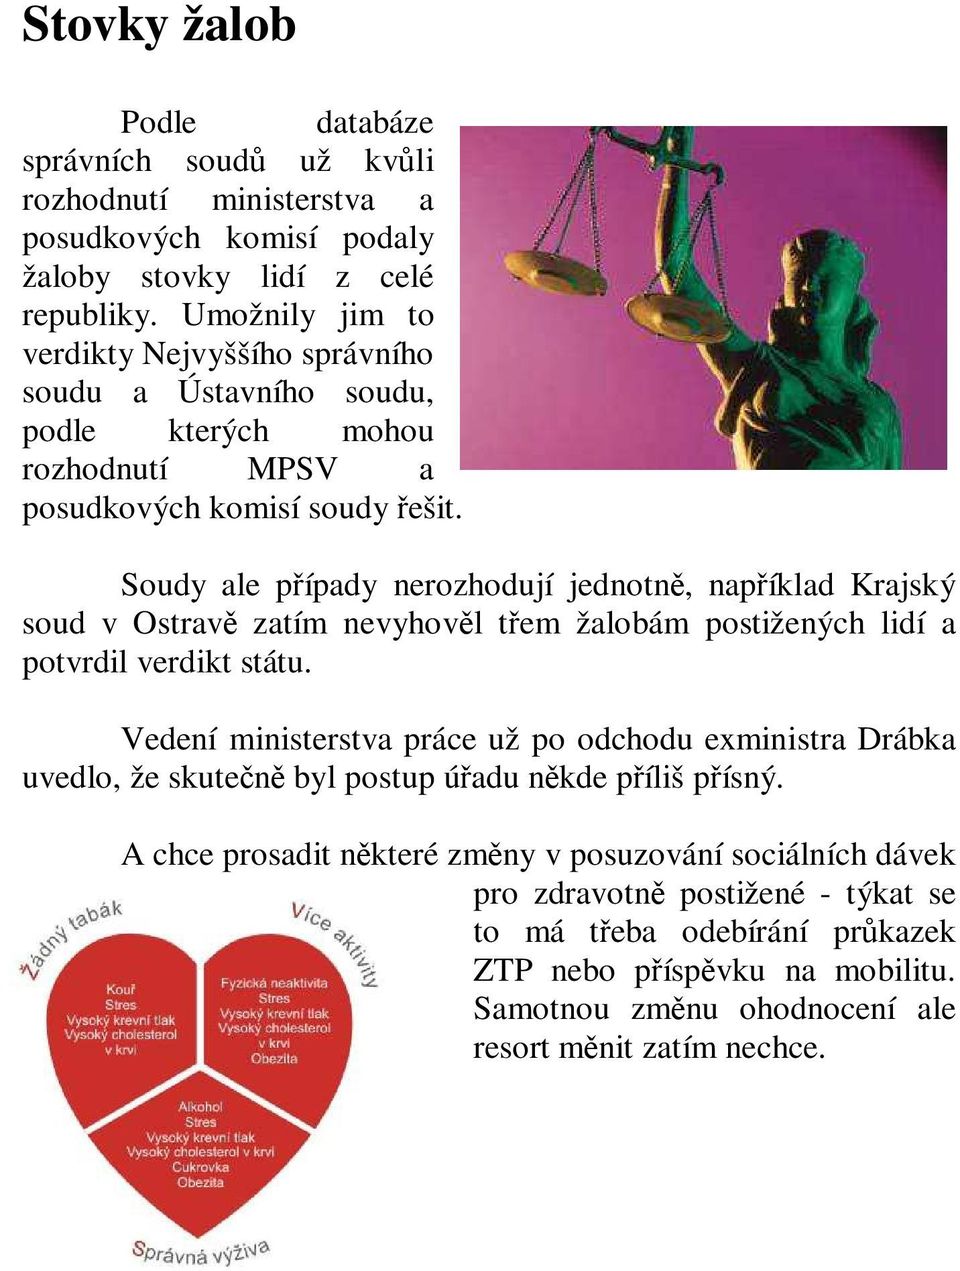 Soudy ale případy nerozhodují jednotně, například Krajský soud v Ostravě zatím nevyhověl třem žalobám postižených lidí a potvrdil verdikt státu.